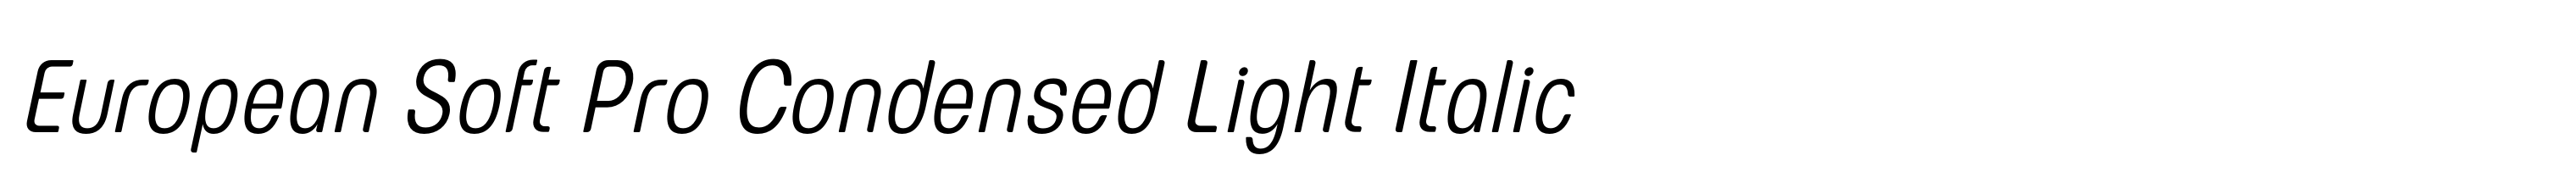 European Soft Pro Condensed Light Italic